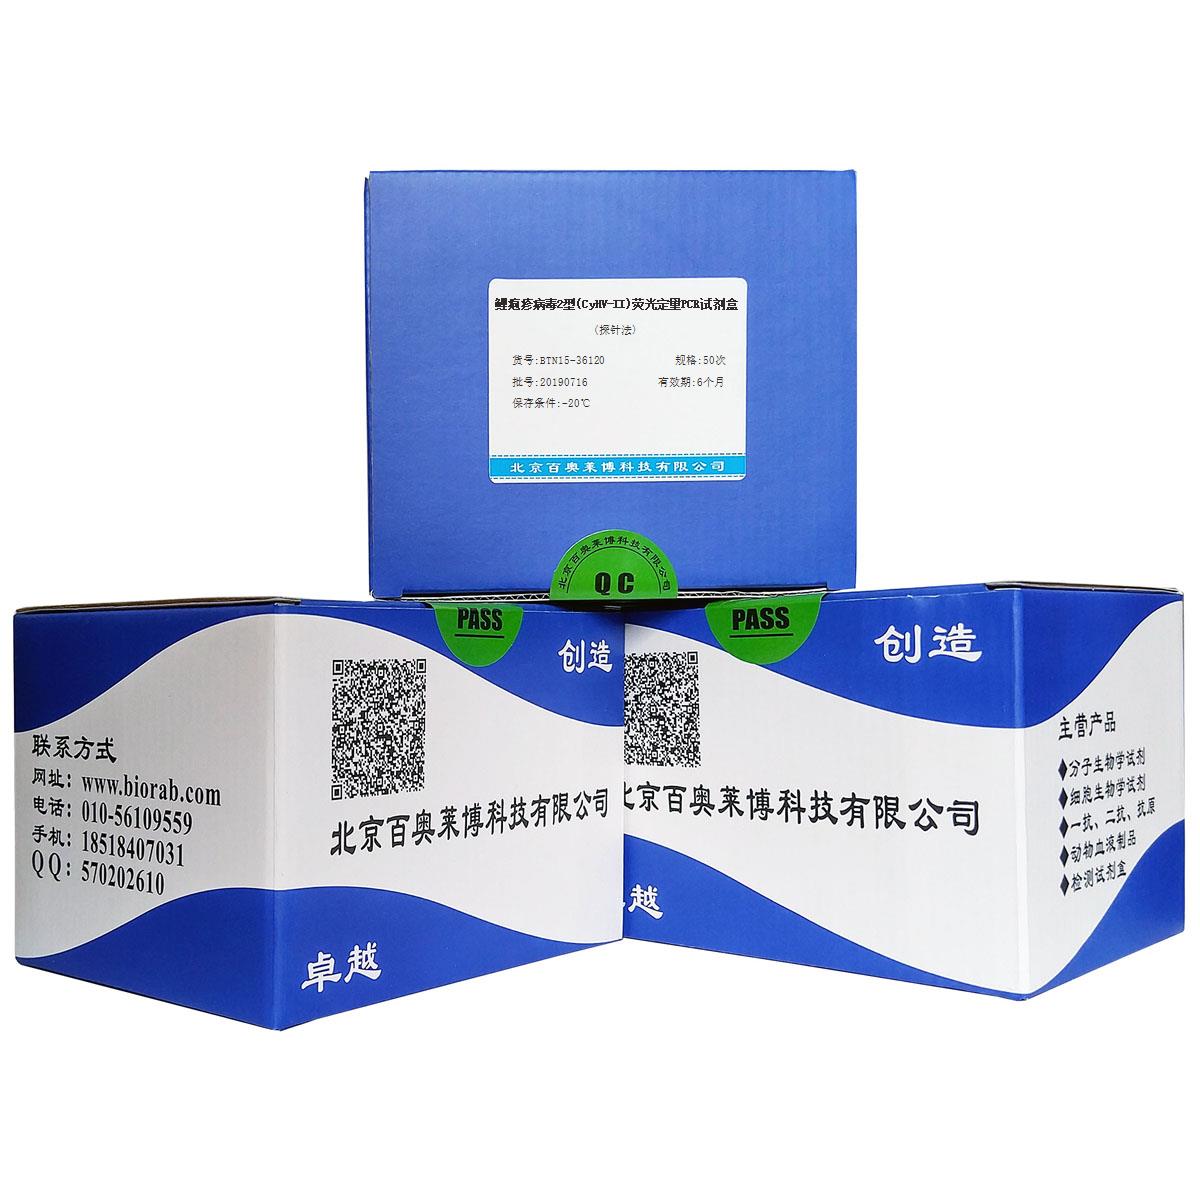 鲤疱疹病毒2型(CyHV-II)荧光定量PCR试剂盒(探针法)